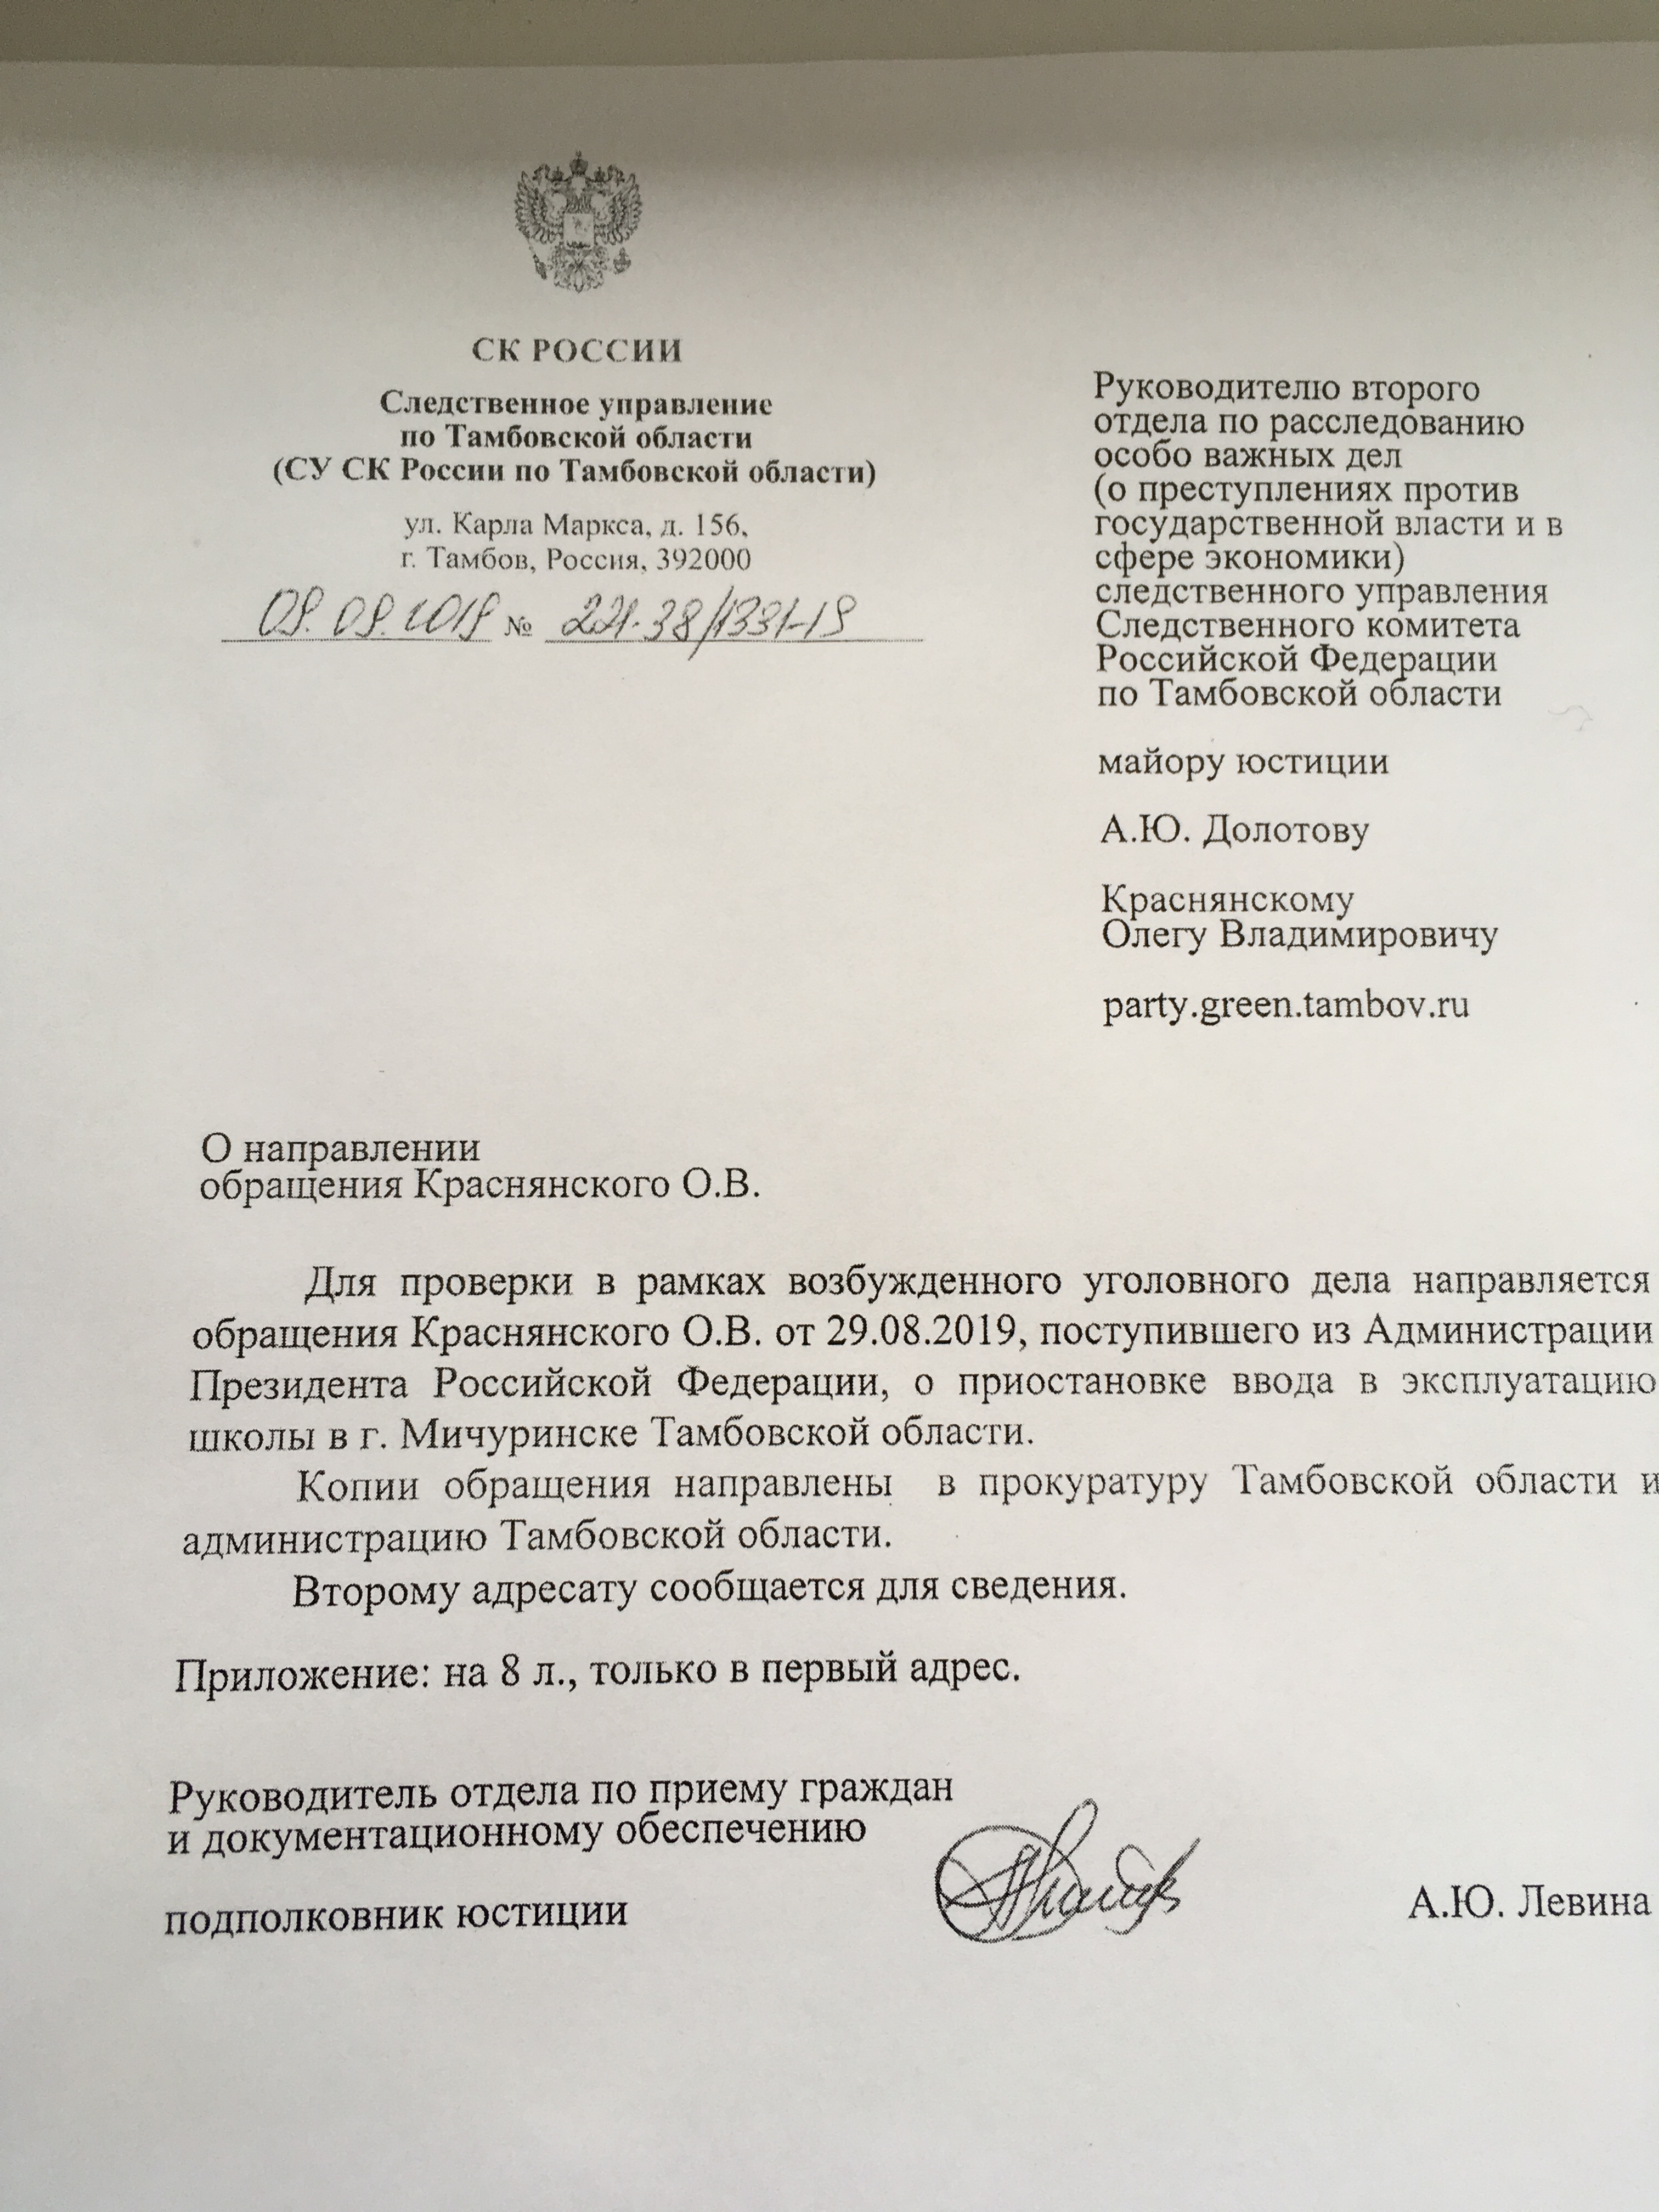 Cледственное управление по Тамбовской области сообщило о приостановке ввода в эксплуатацию школы в г. Мичуринске